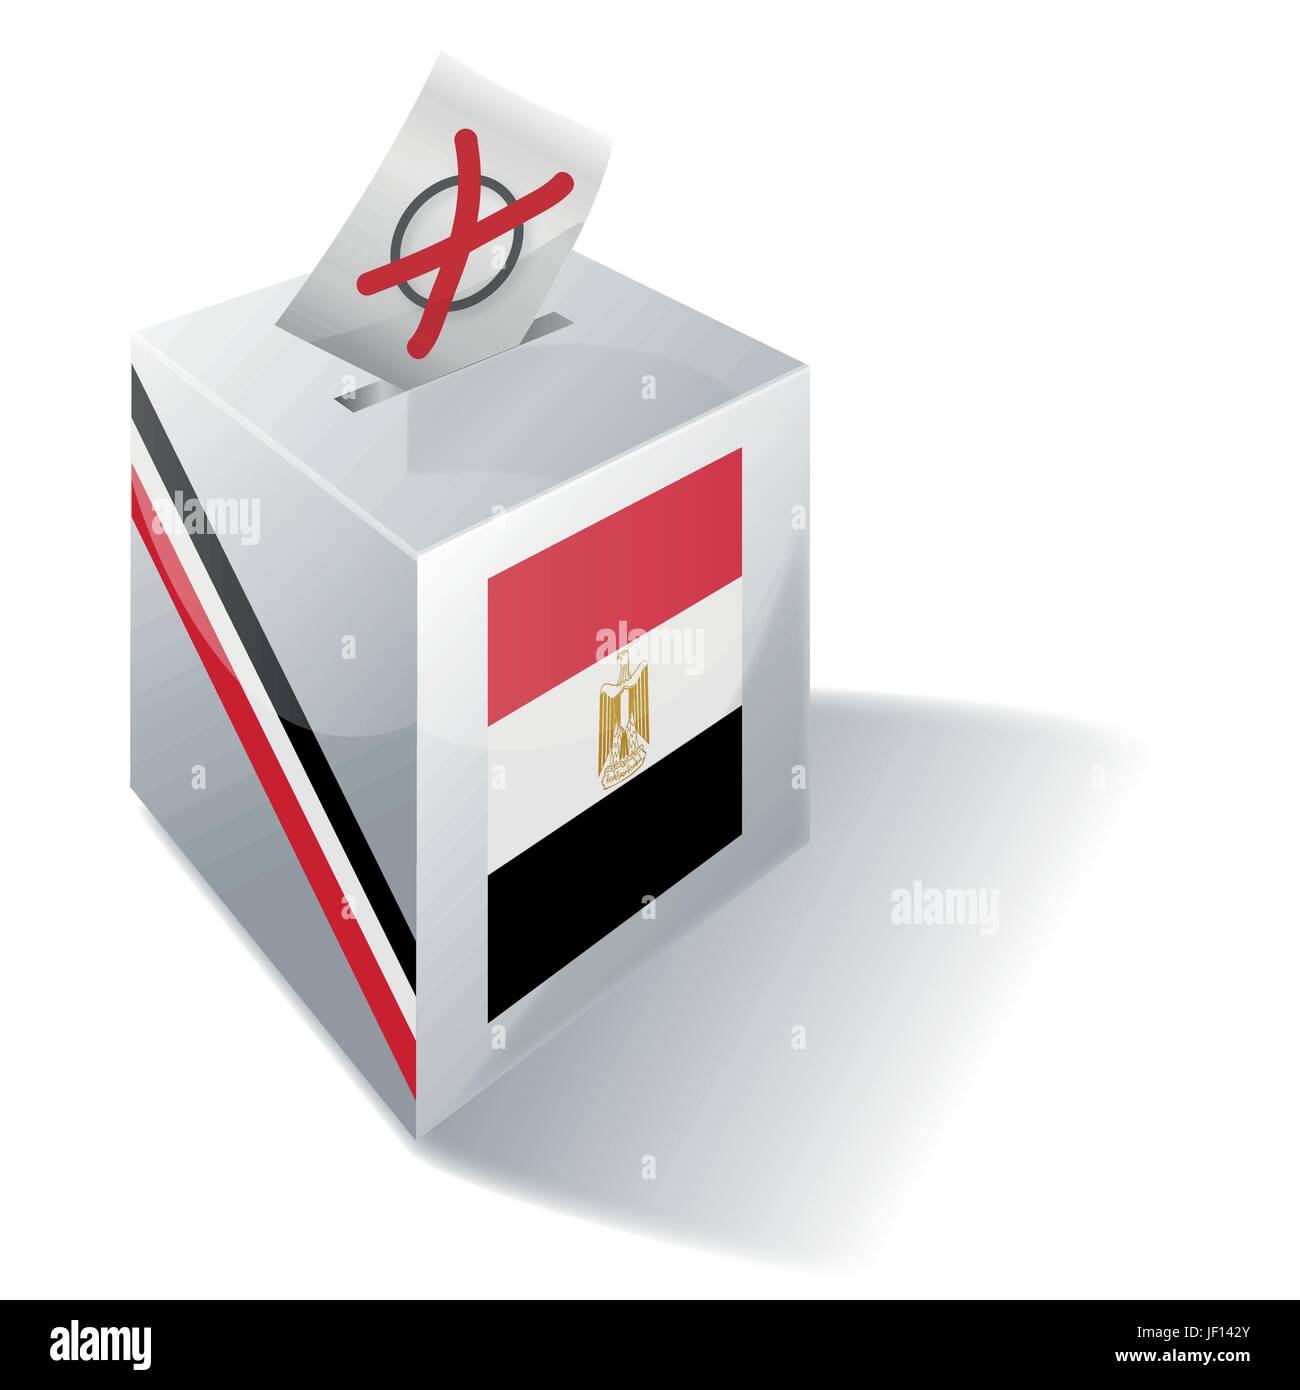 L'Égypte, vote, vote, politique, France, choisissez, Arabian, choix, choix, Illustration de Vecteur